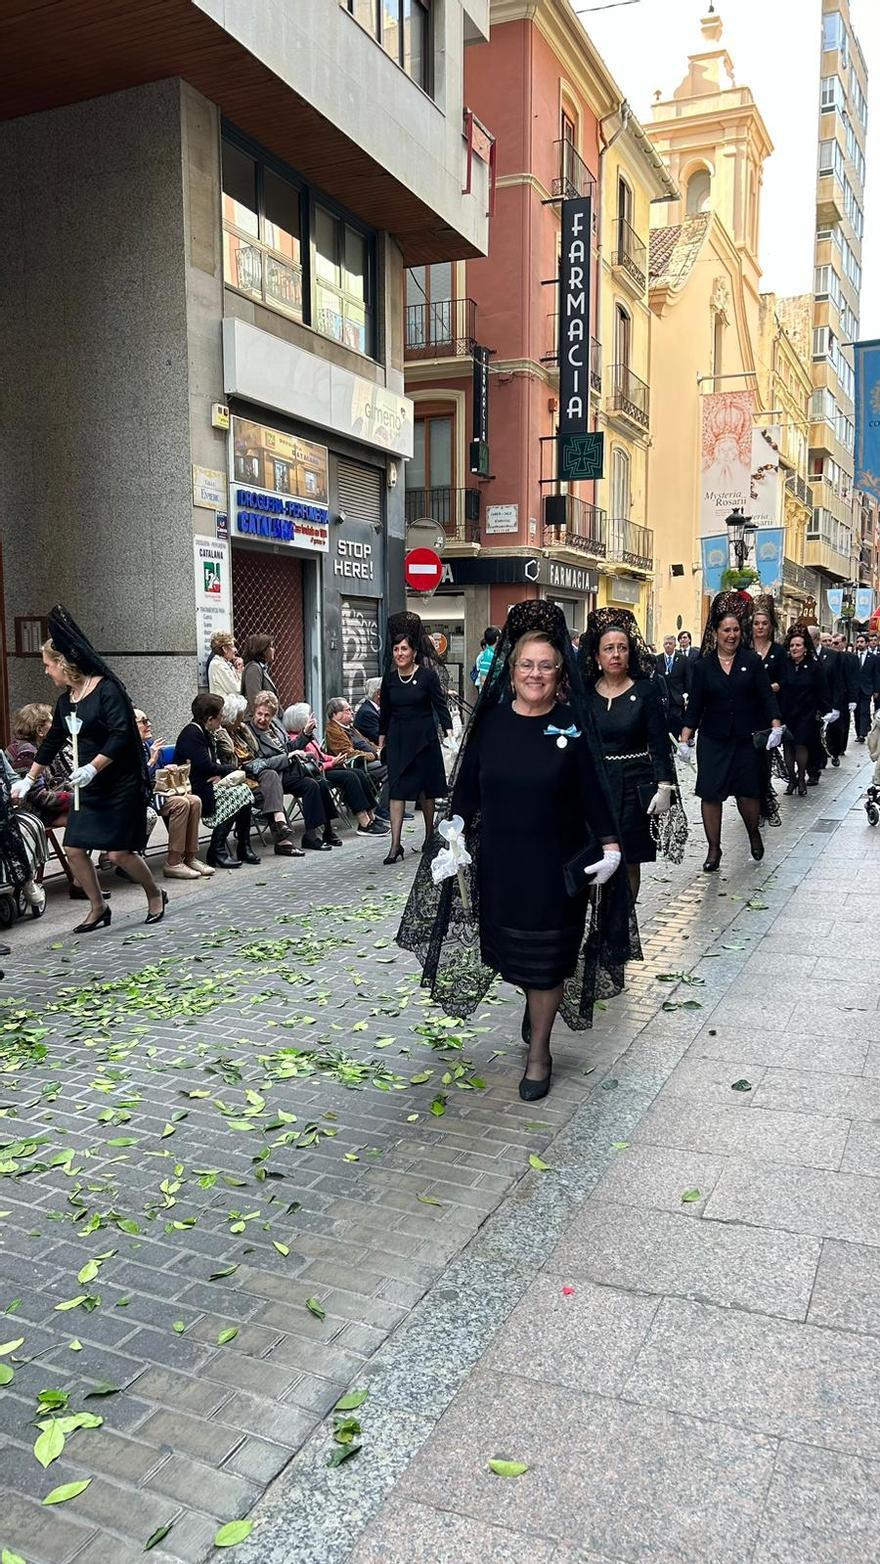 La Lledonera regresa a la basílica en una última procesión